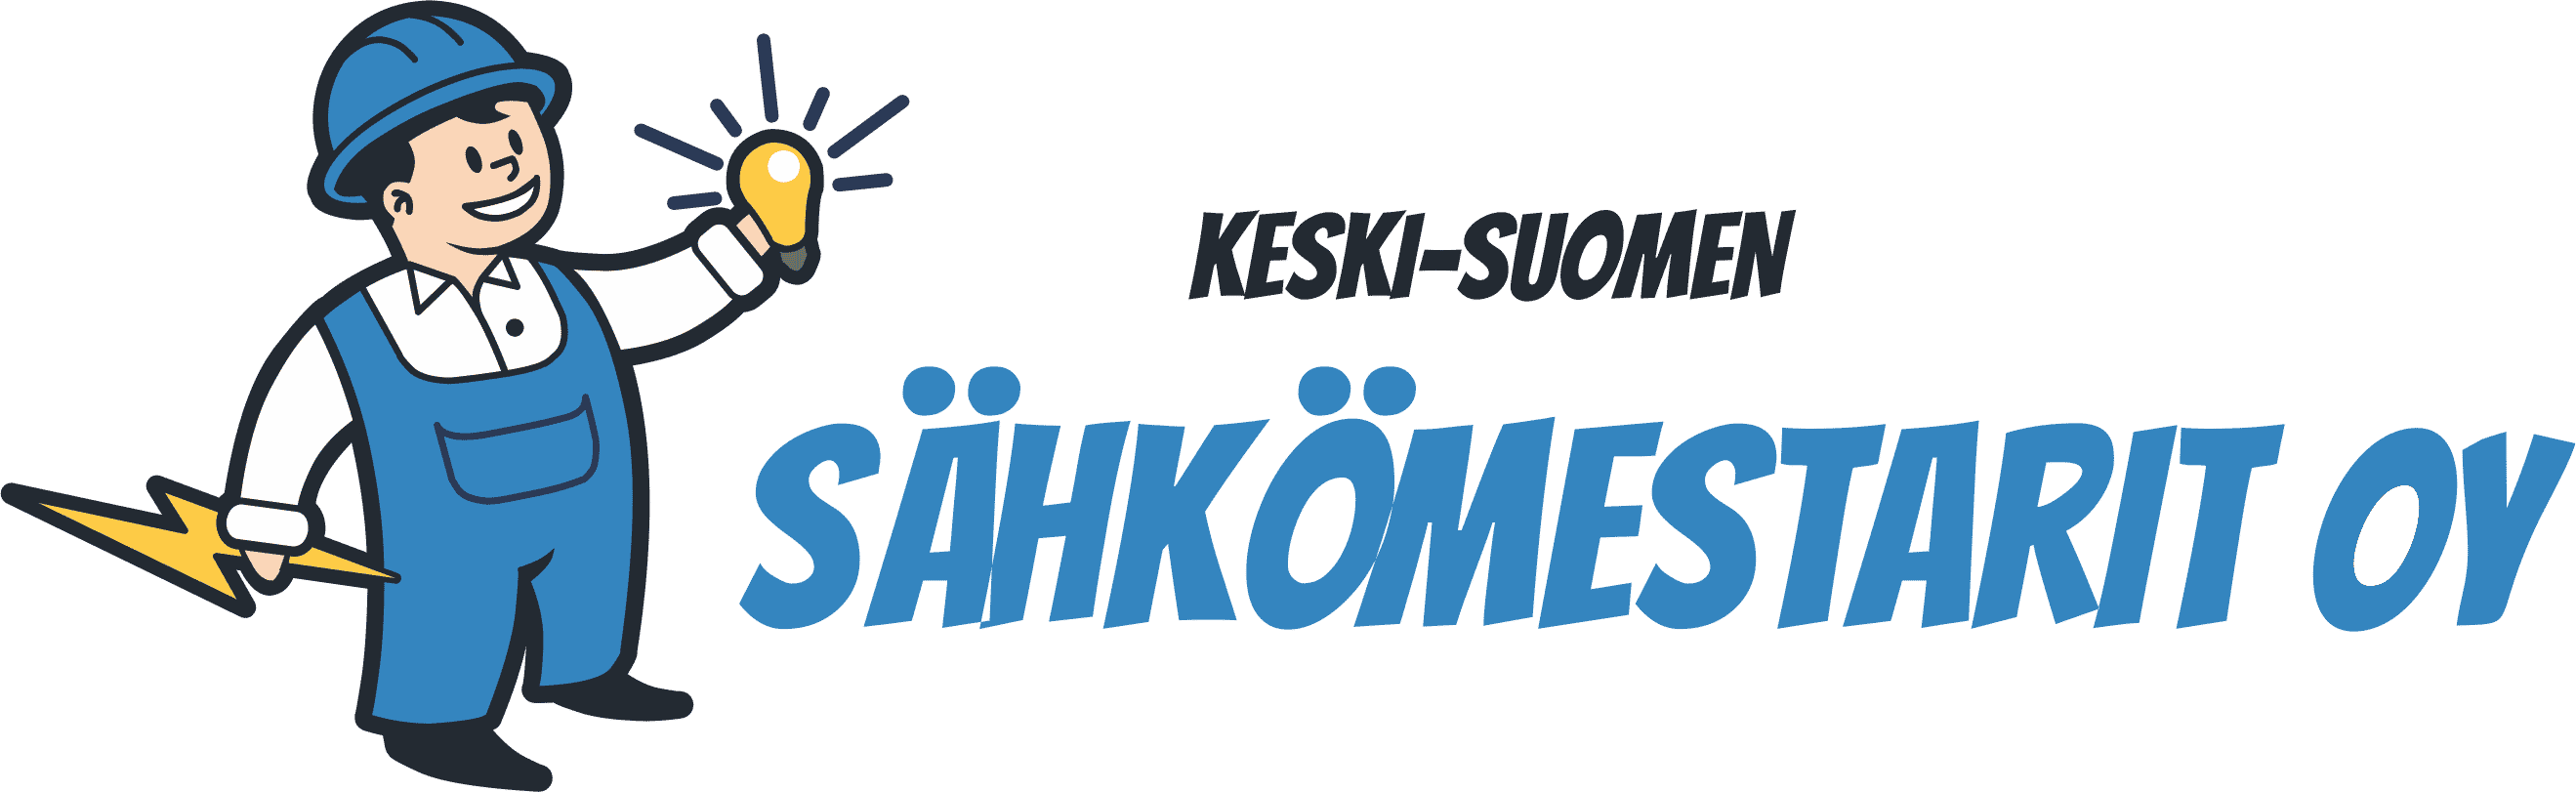 Sähkötyöt Jyväskylä | Keski-Suomen SähköMestarit Oy